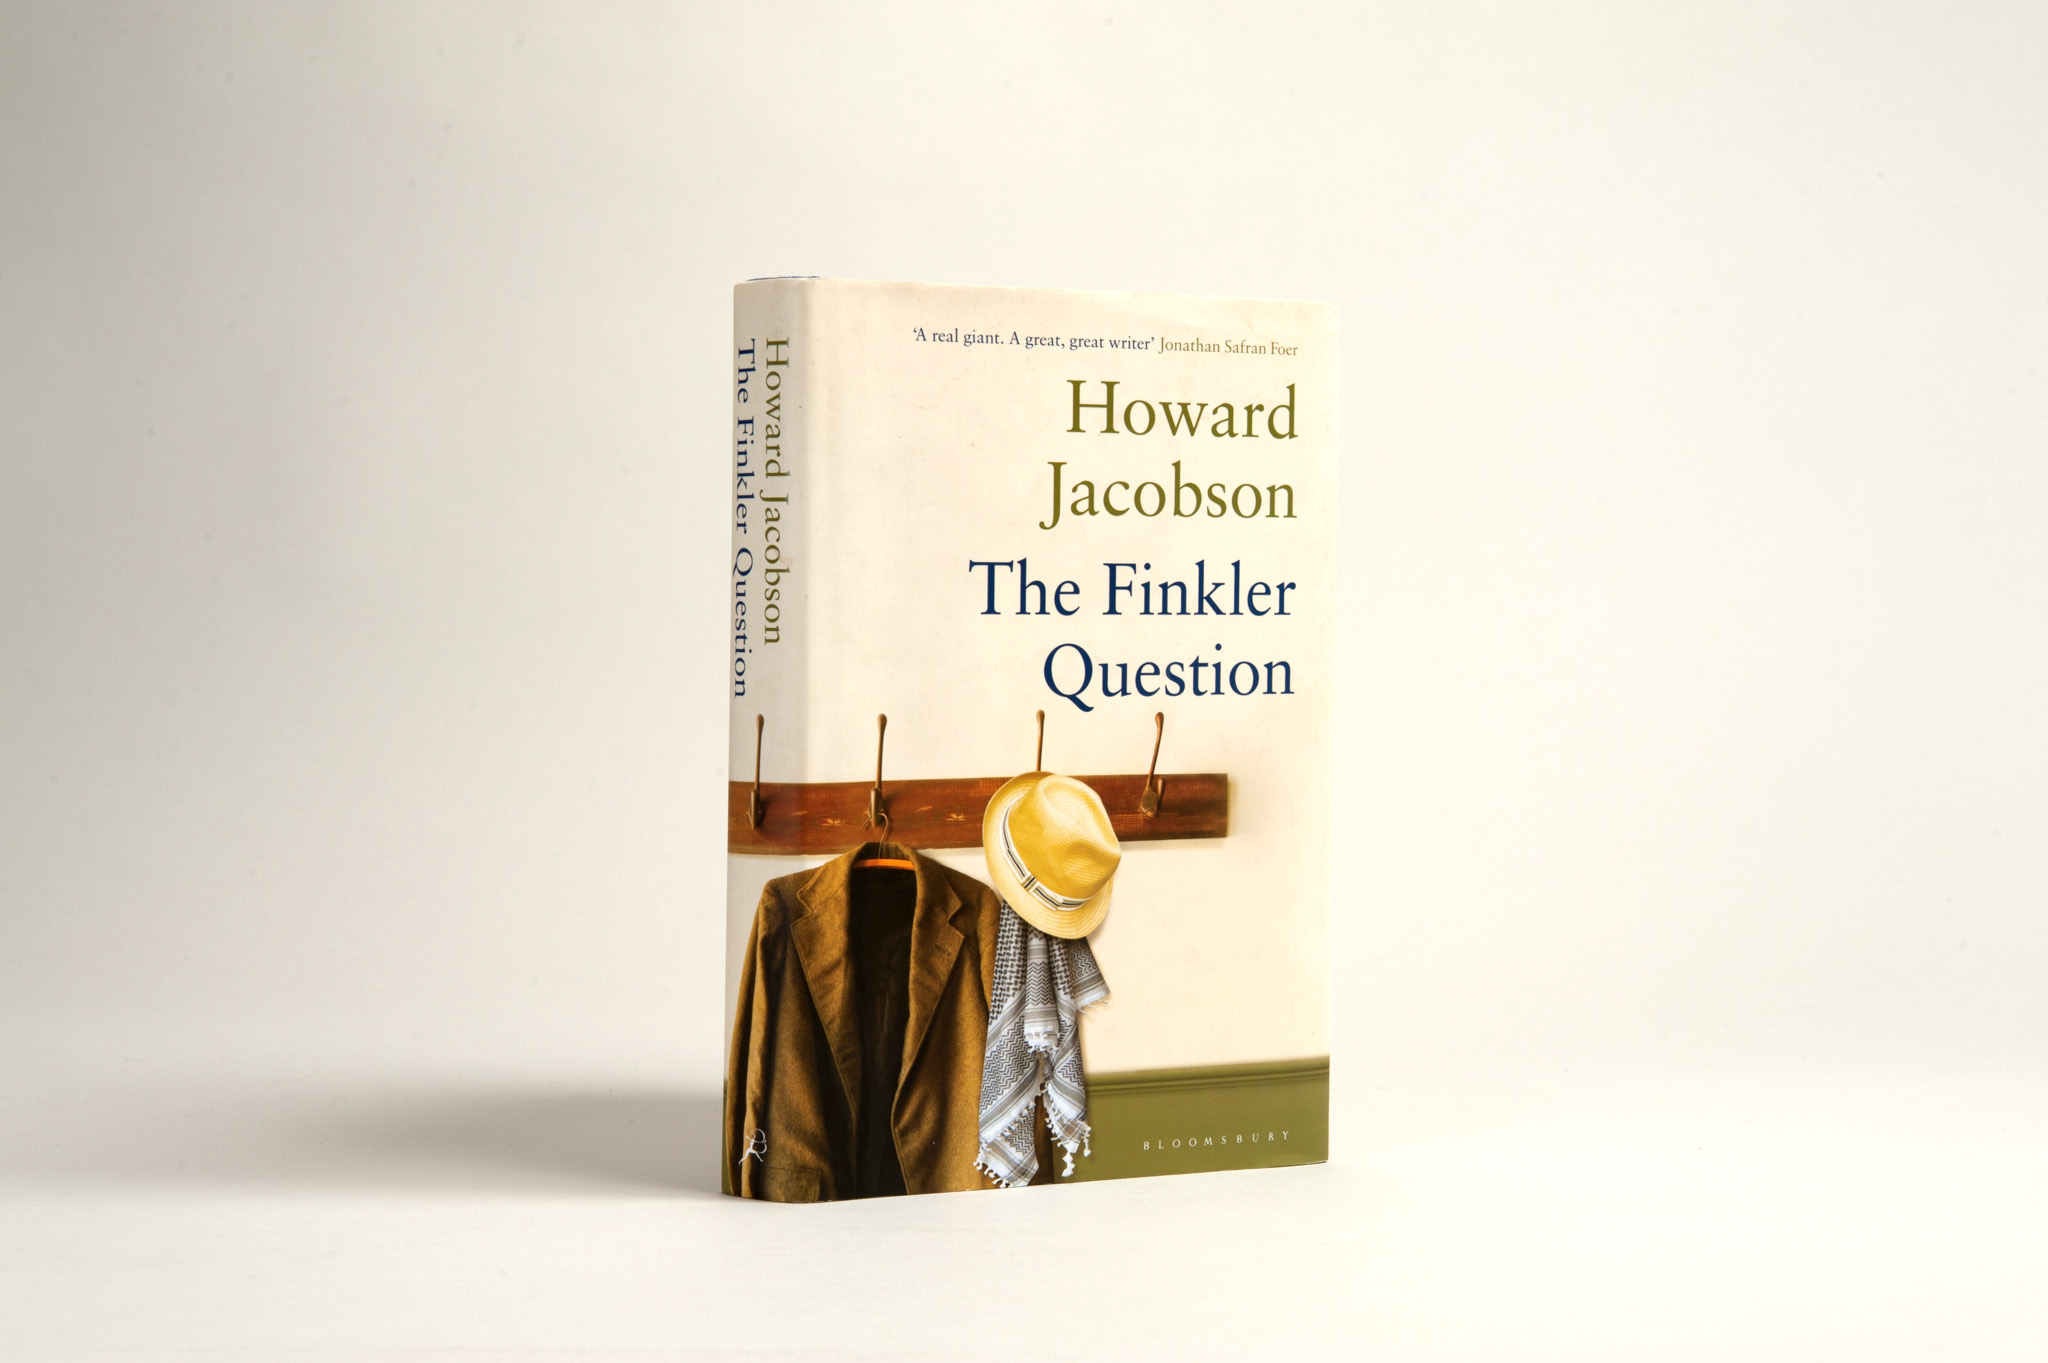 روايه سؤال فينكلر للكاتب هاورد جاكوبسون